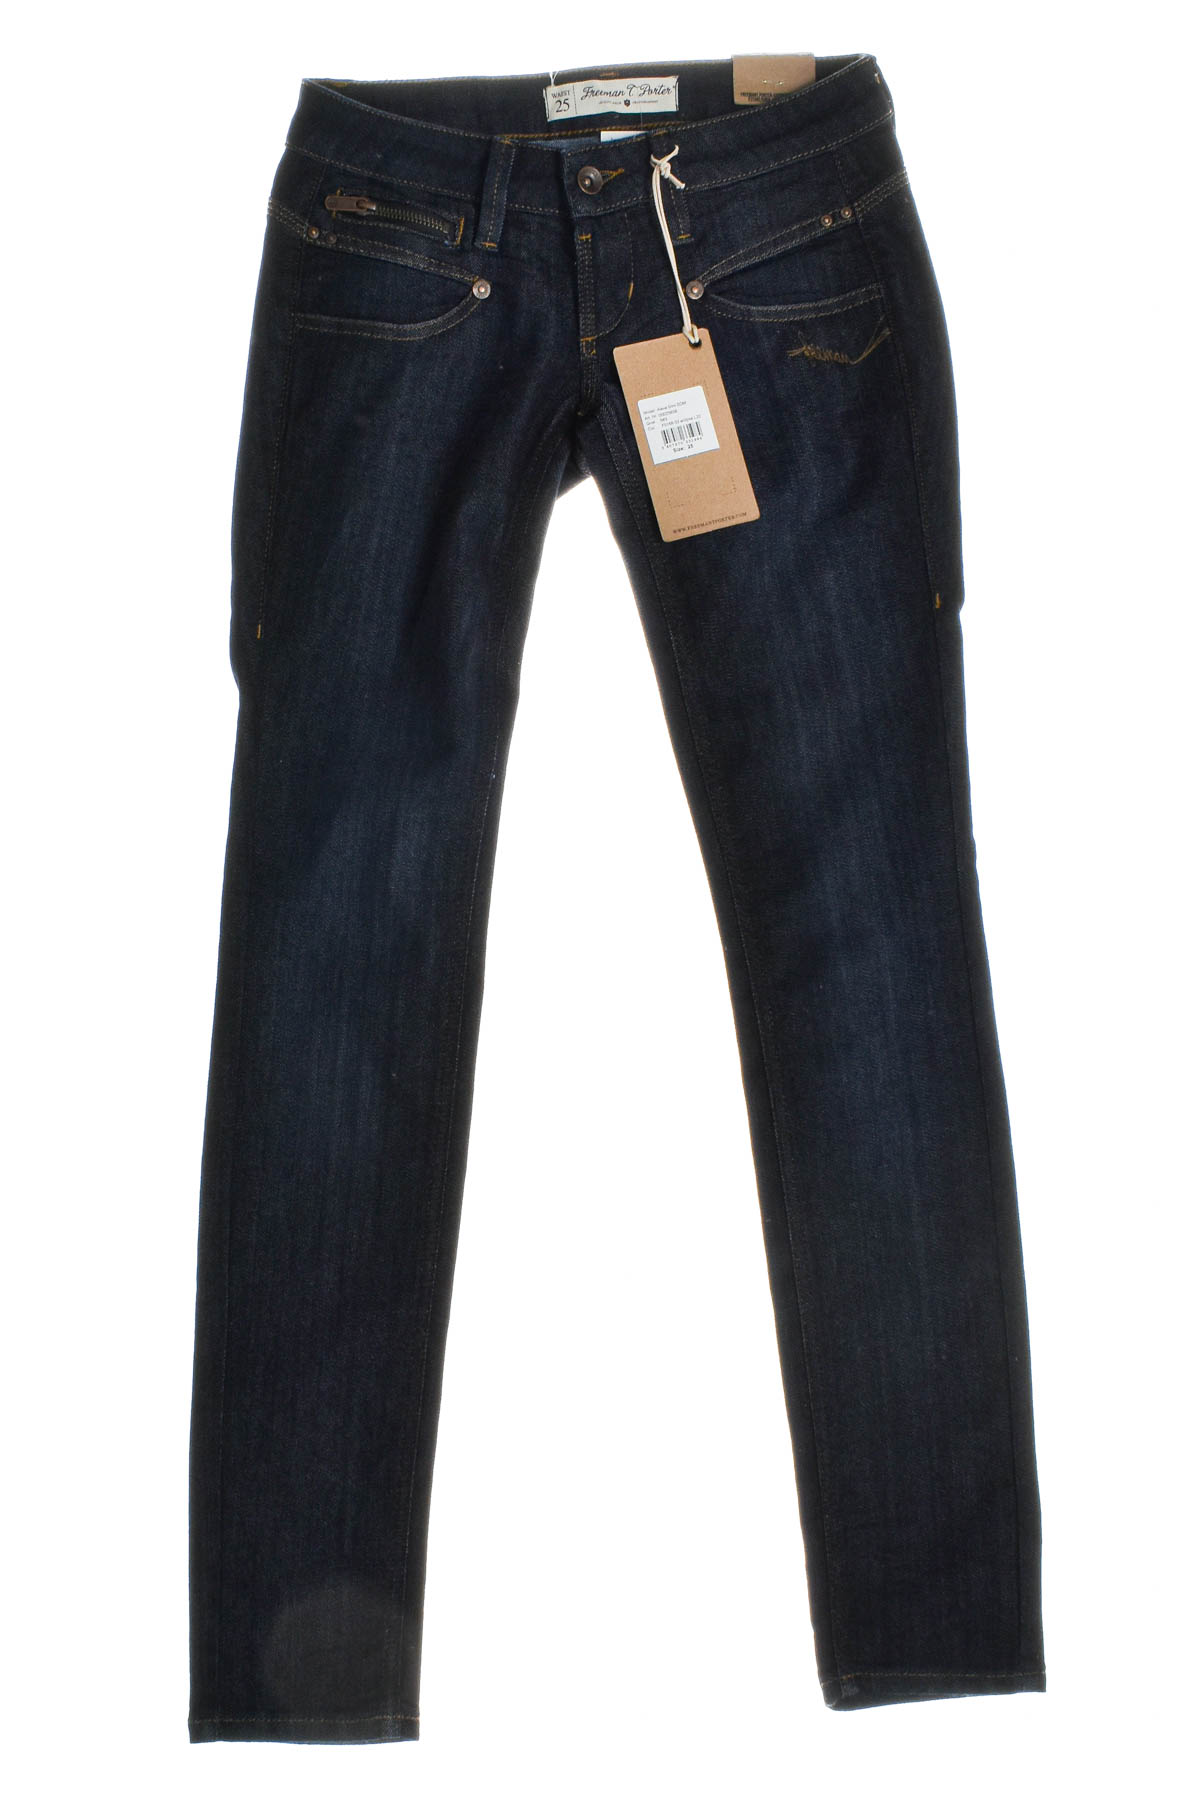 Women's jeans - Freeman T. Porter - 0